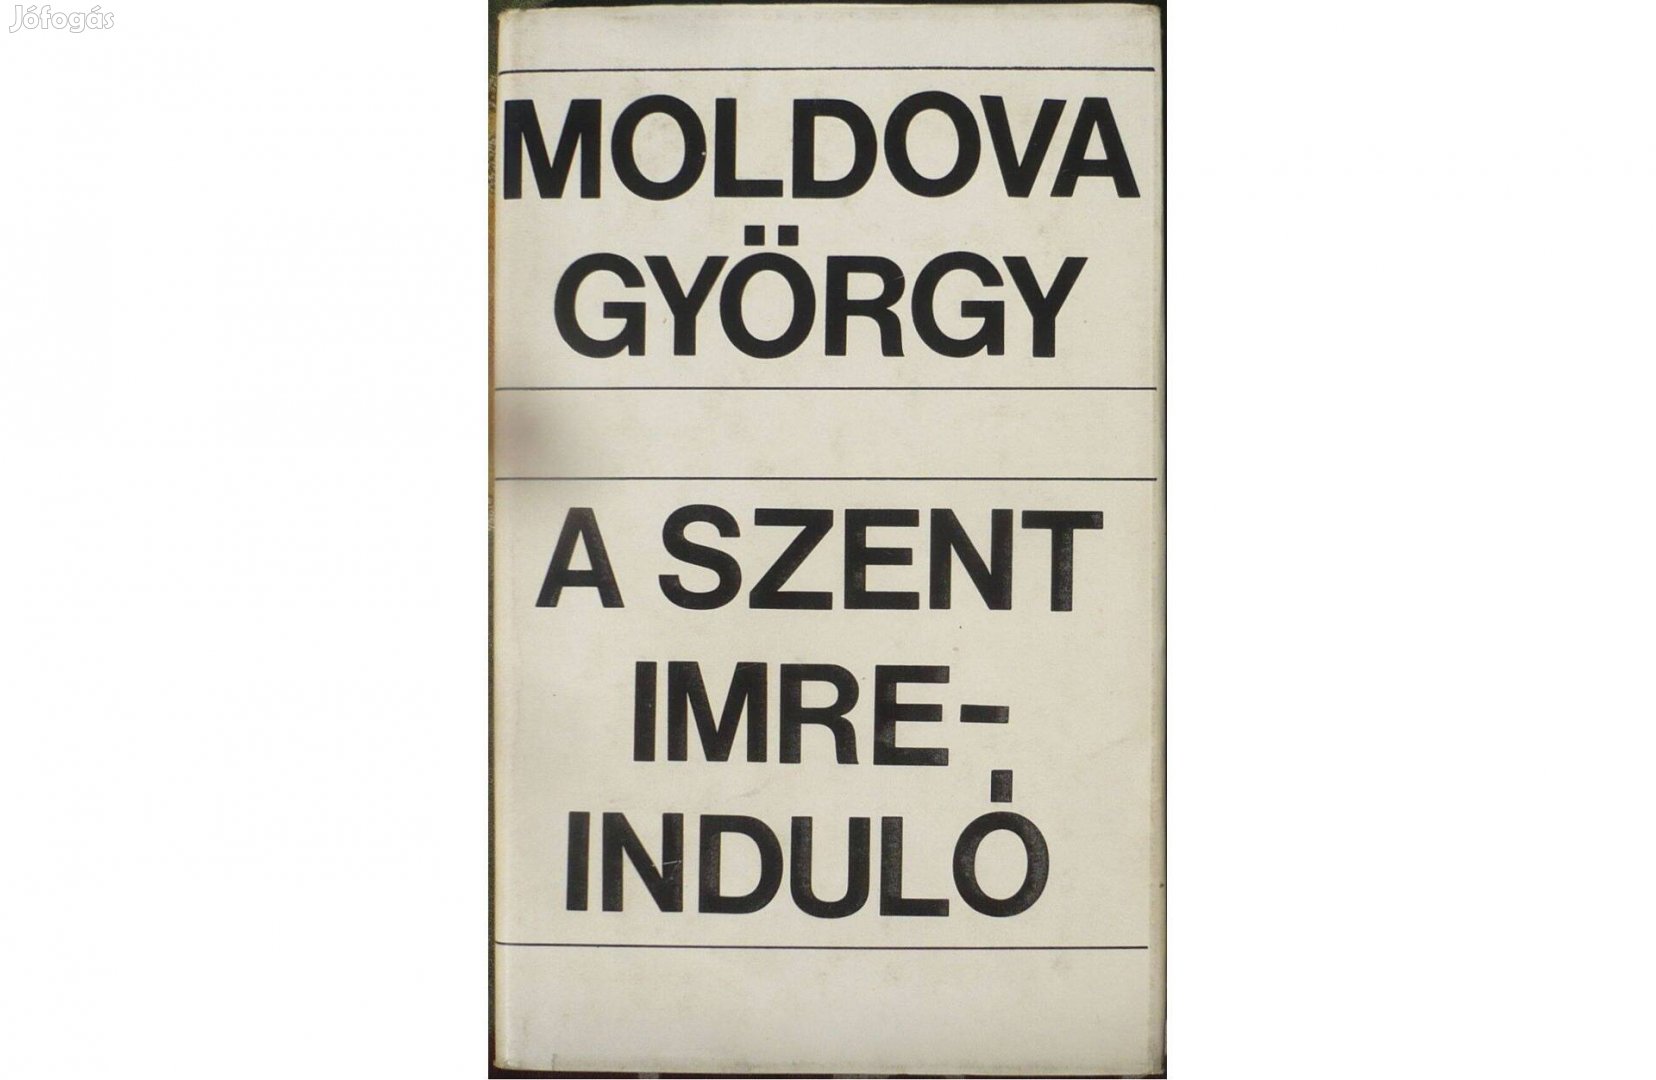 Moldova György: A Szent Imre-induló